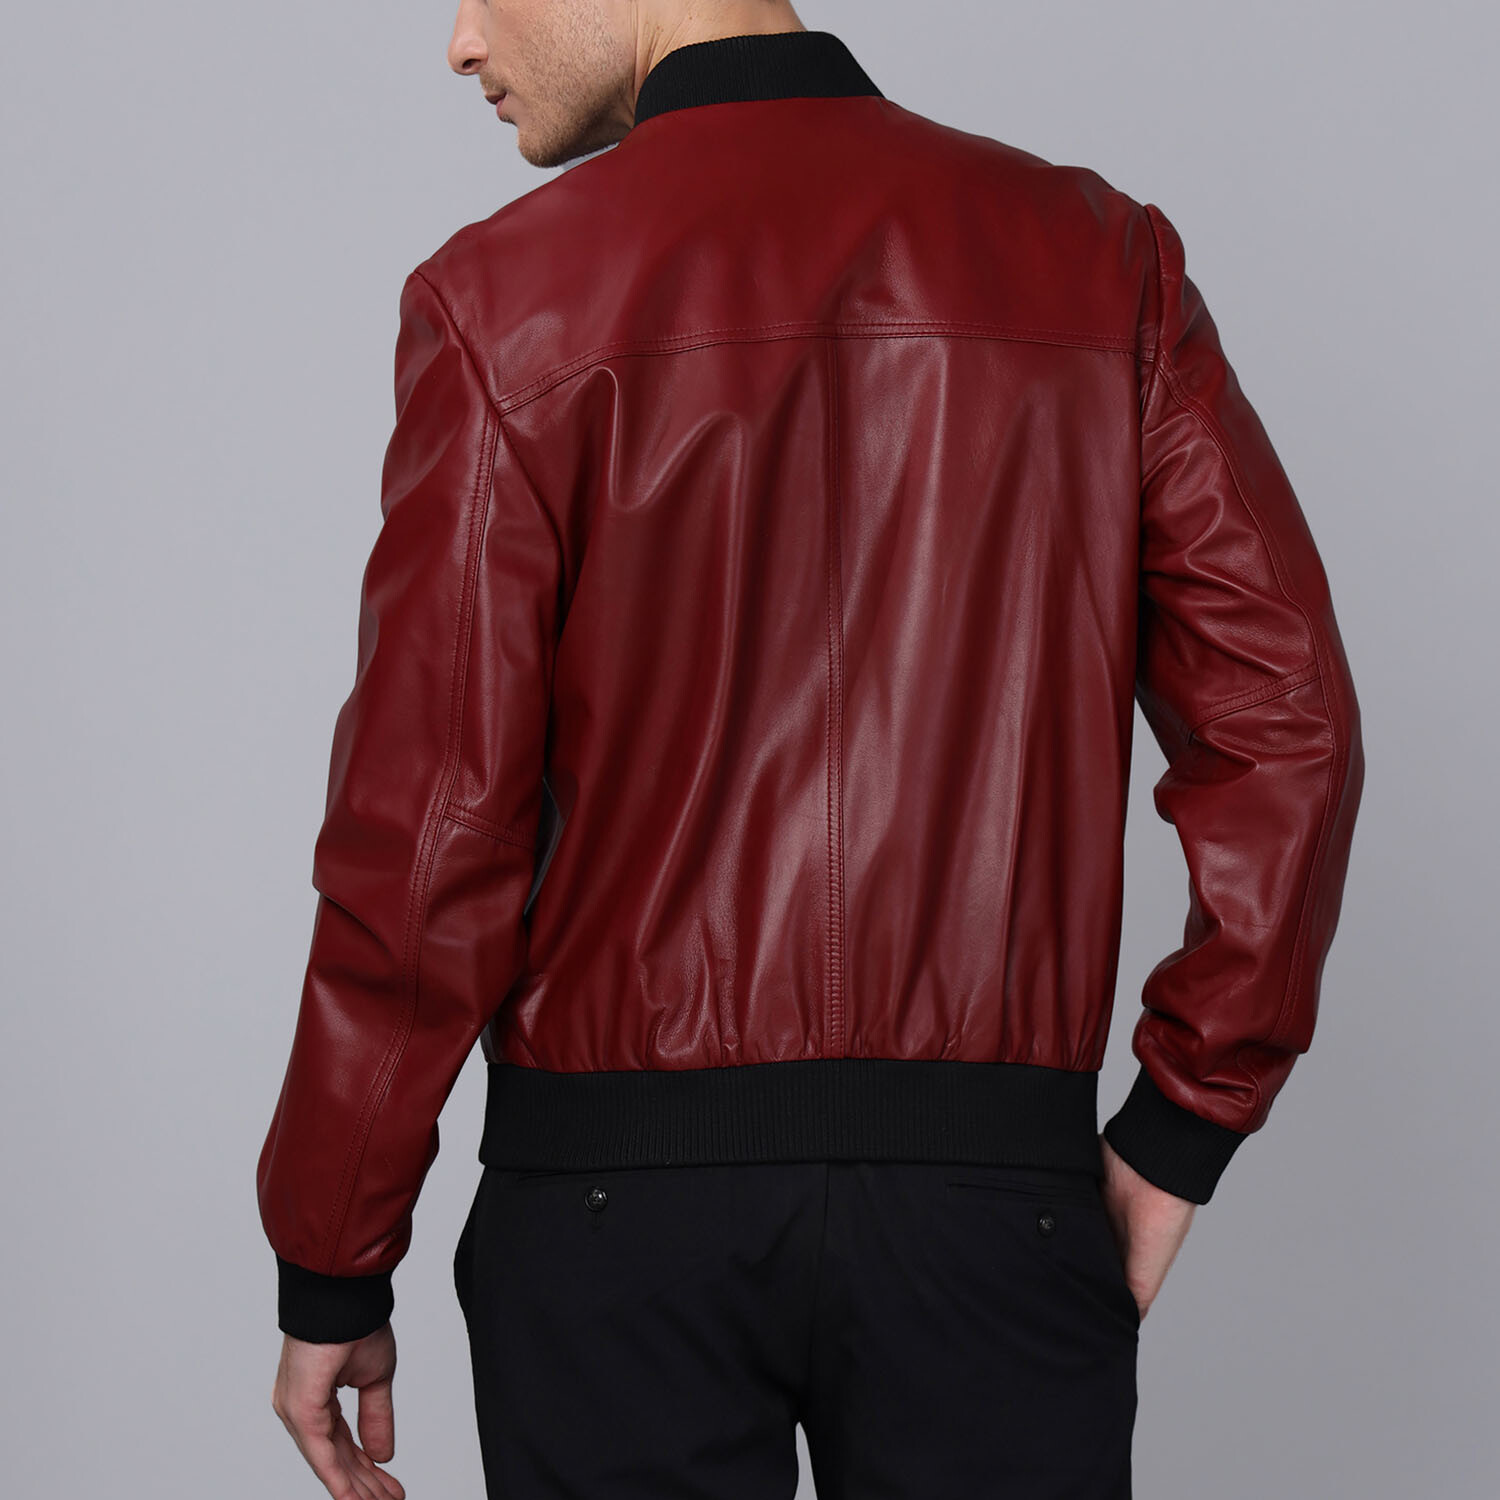 Harden Leather Jacket // Bordeaux (M) - Basics&More Leather Jackets ...